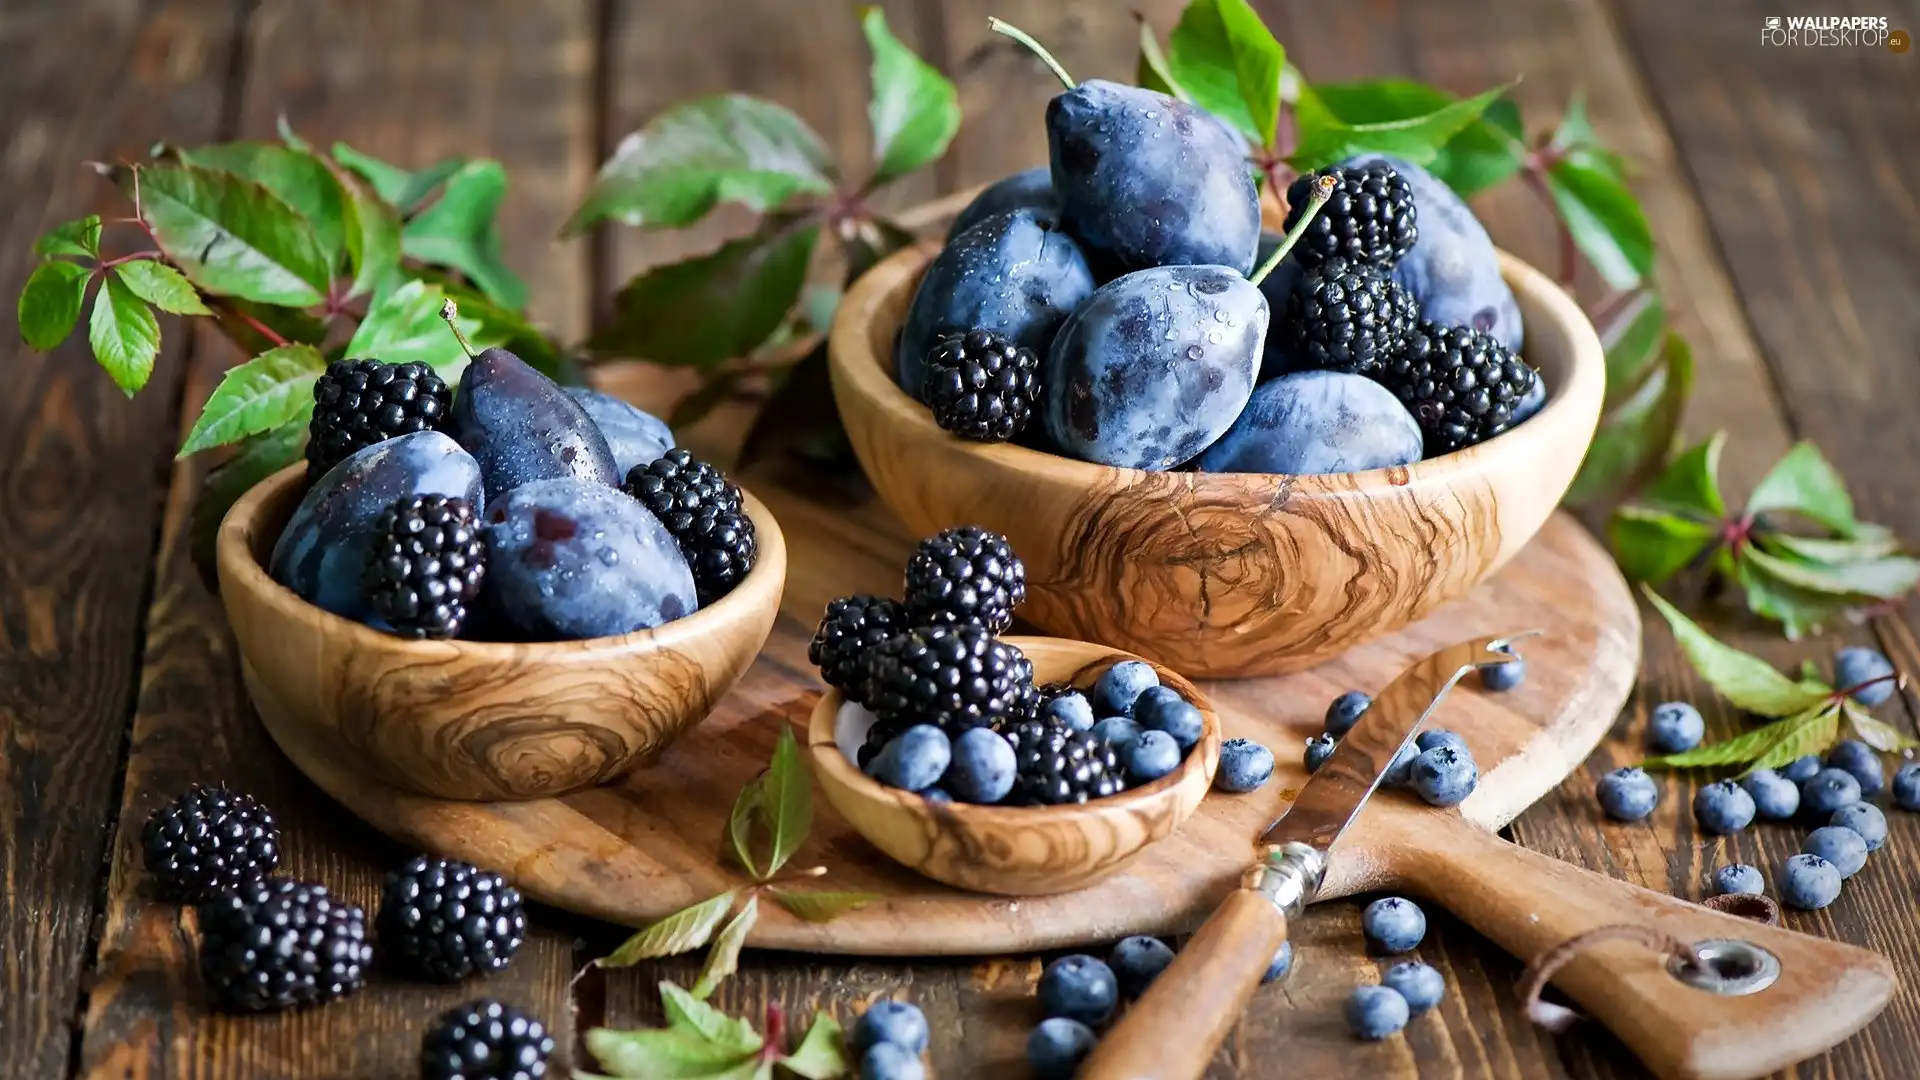 wood, Bowls, blackberries, blueberries, plums